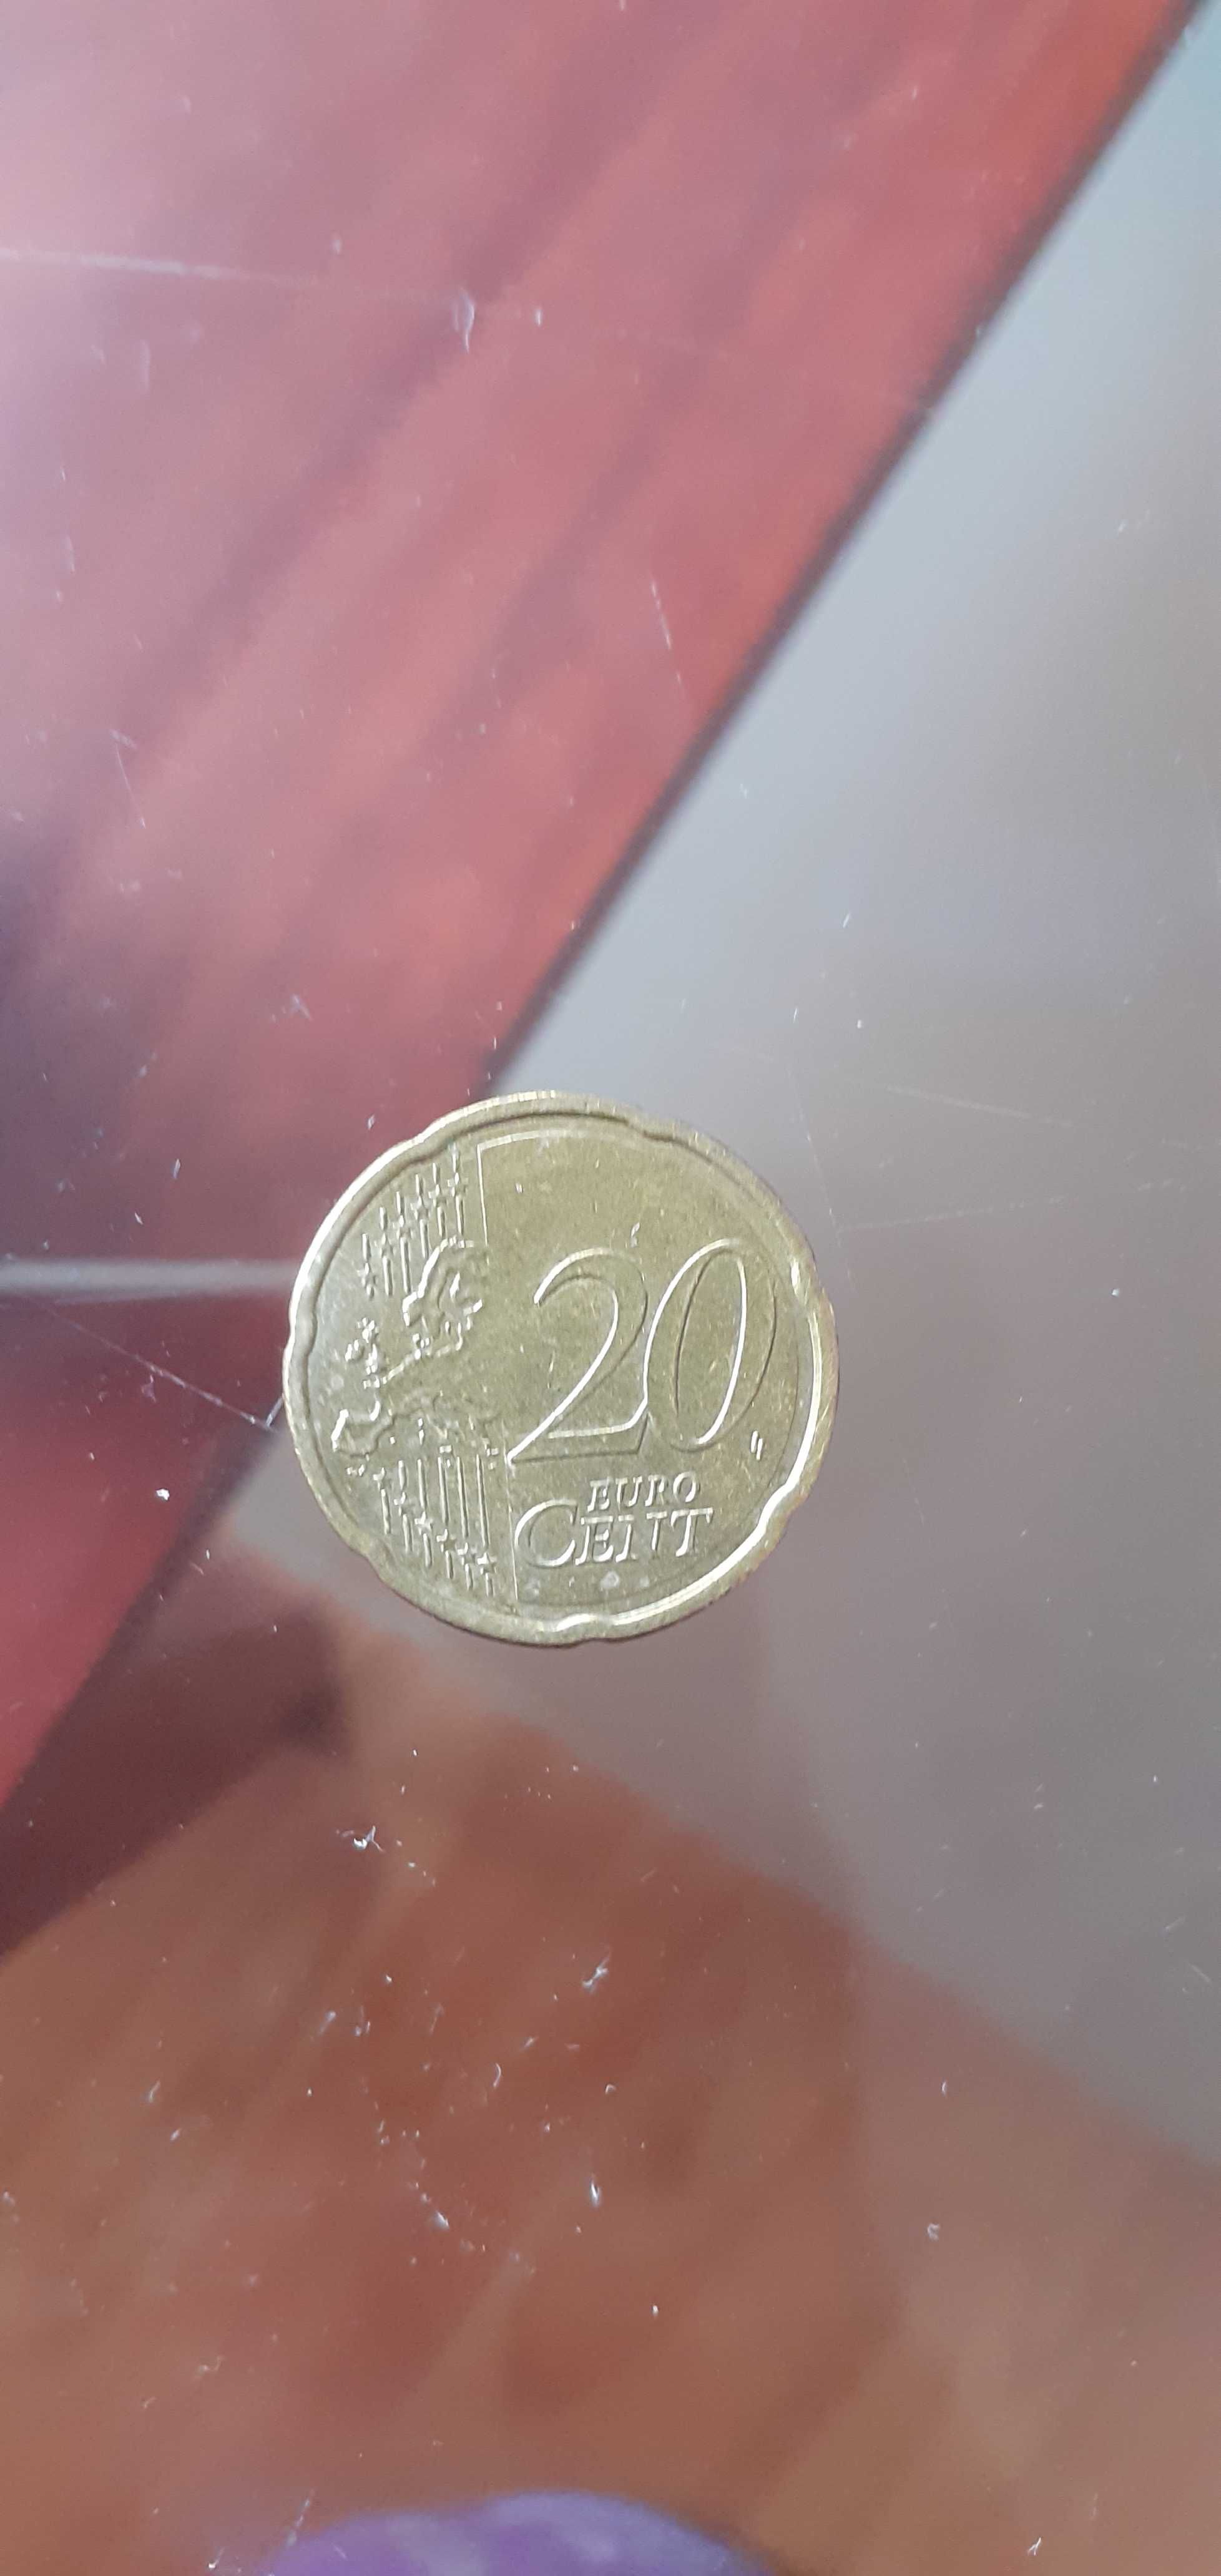 Vand moneda 2€, an 1999